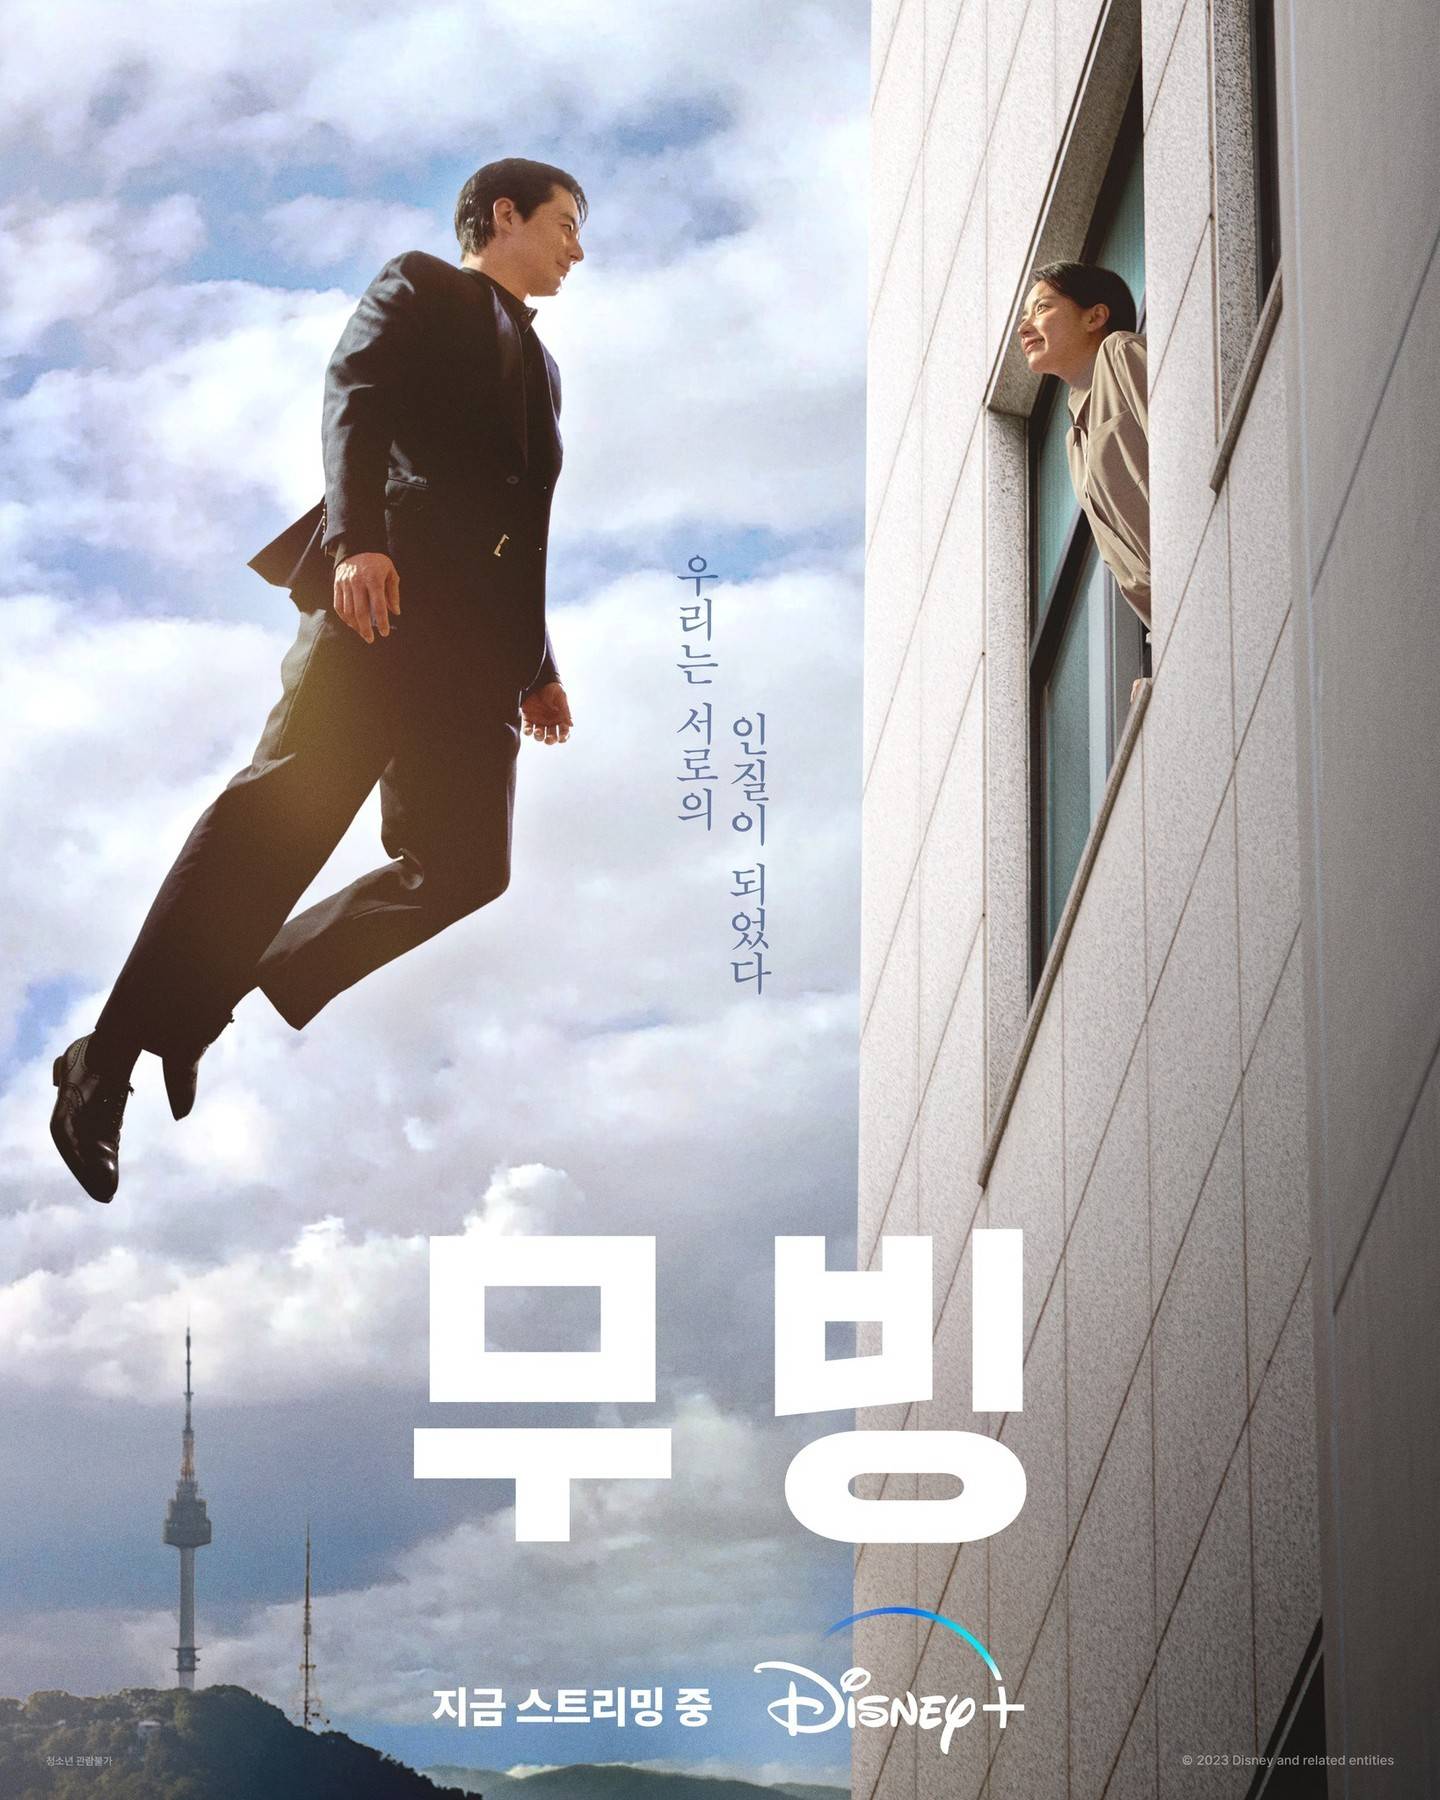 Cặp sao Jo In Sung và Han Hyo Joo gây sốt trong phim ‘Moving’ - Ảnh 1.